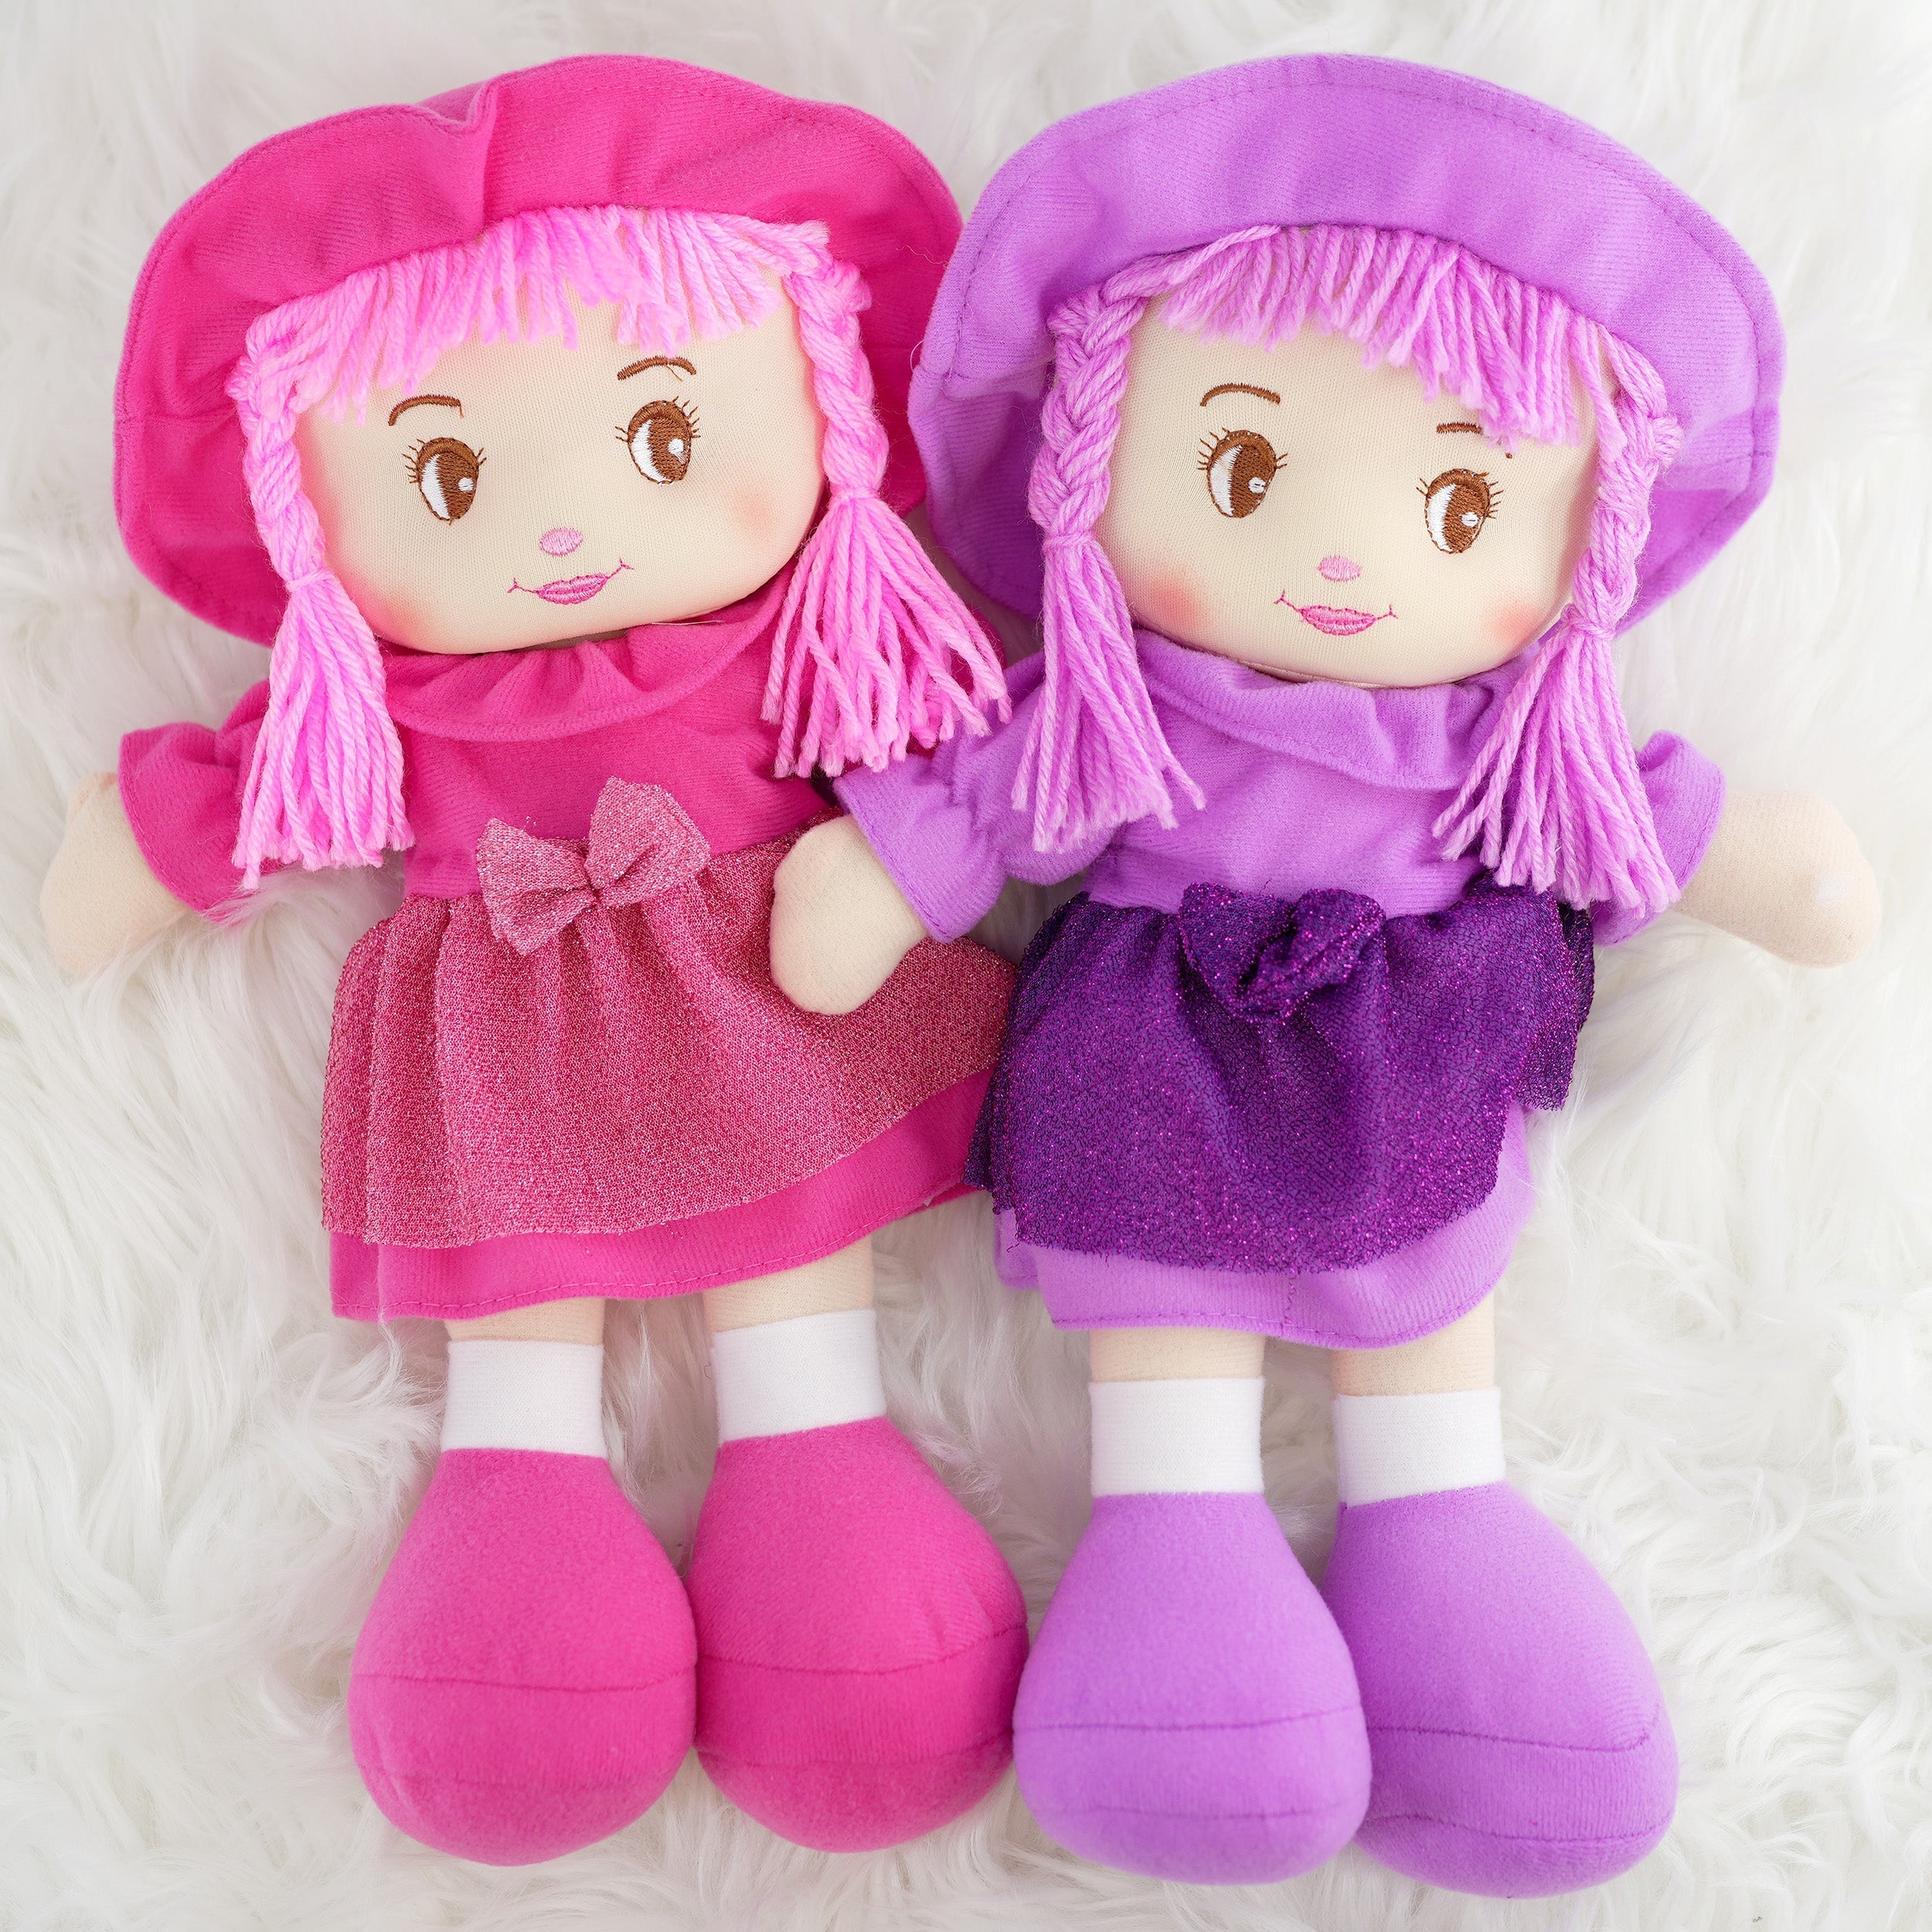 BiBi Doll Baby Doll My First Rag Doll 35 cm Soft Cuddly Dolly